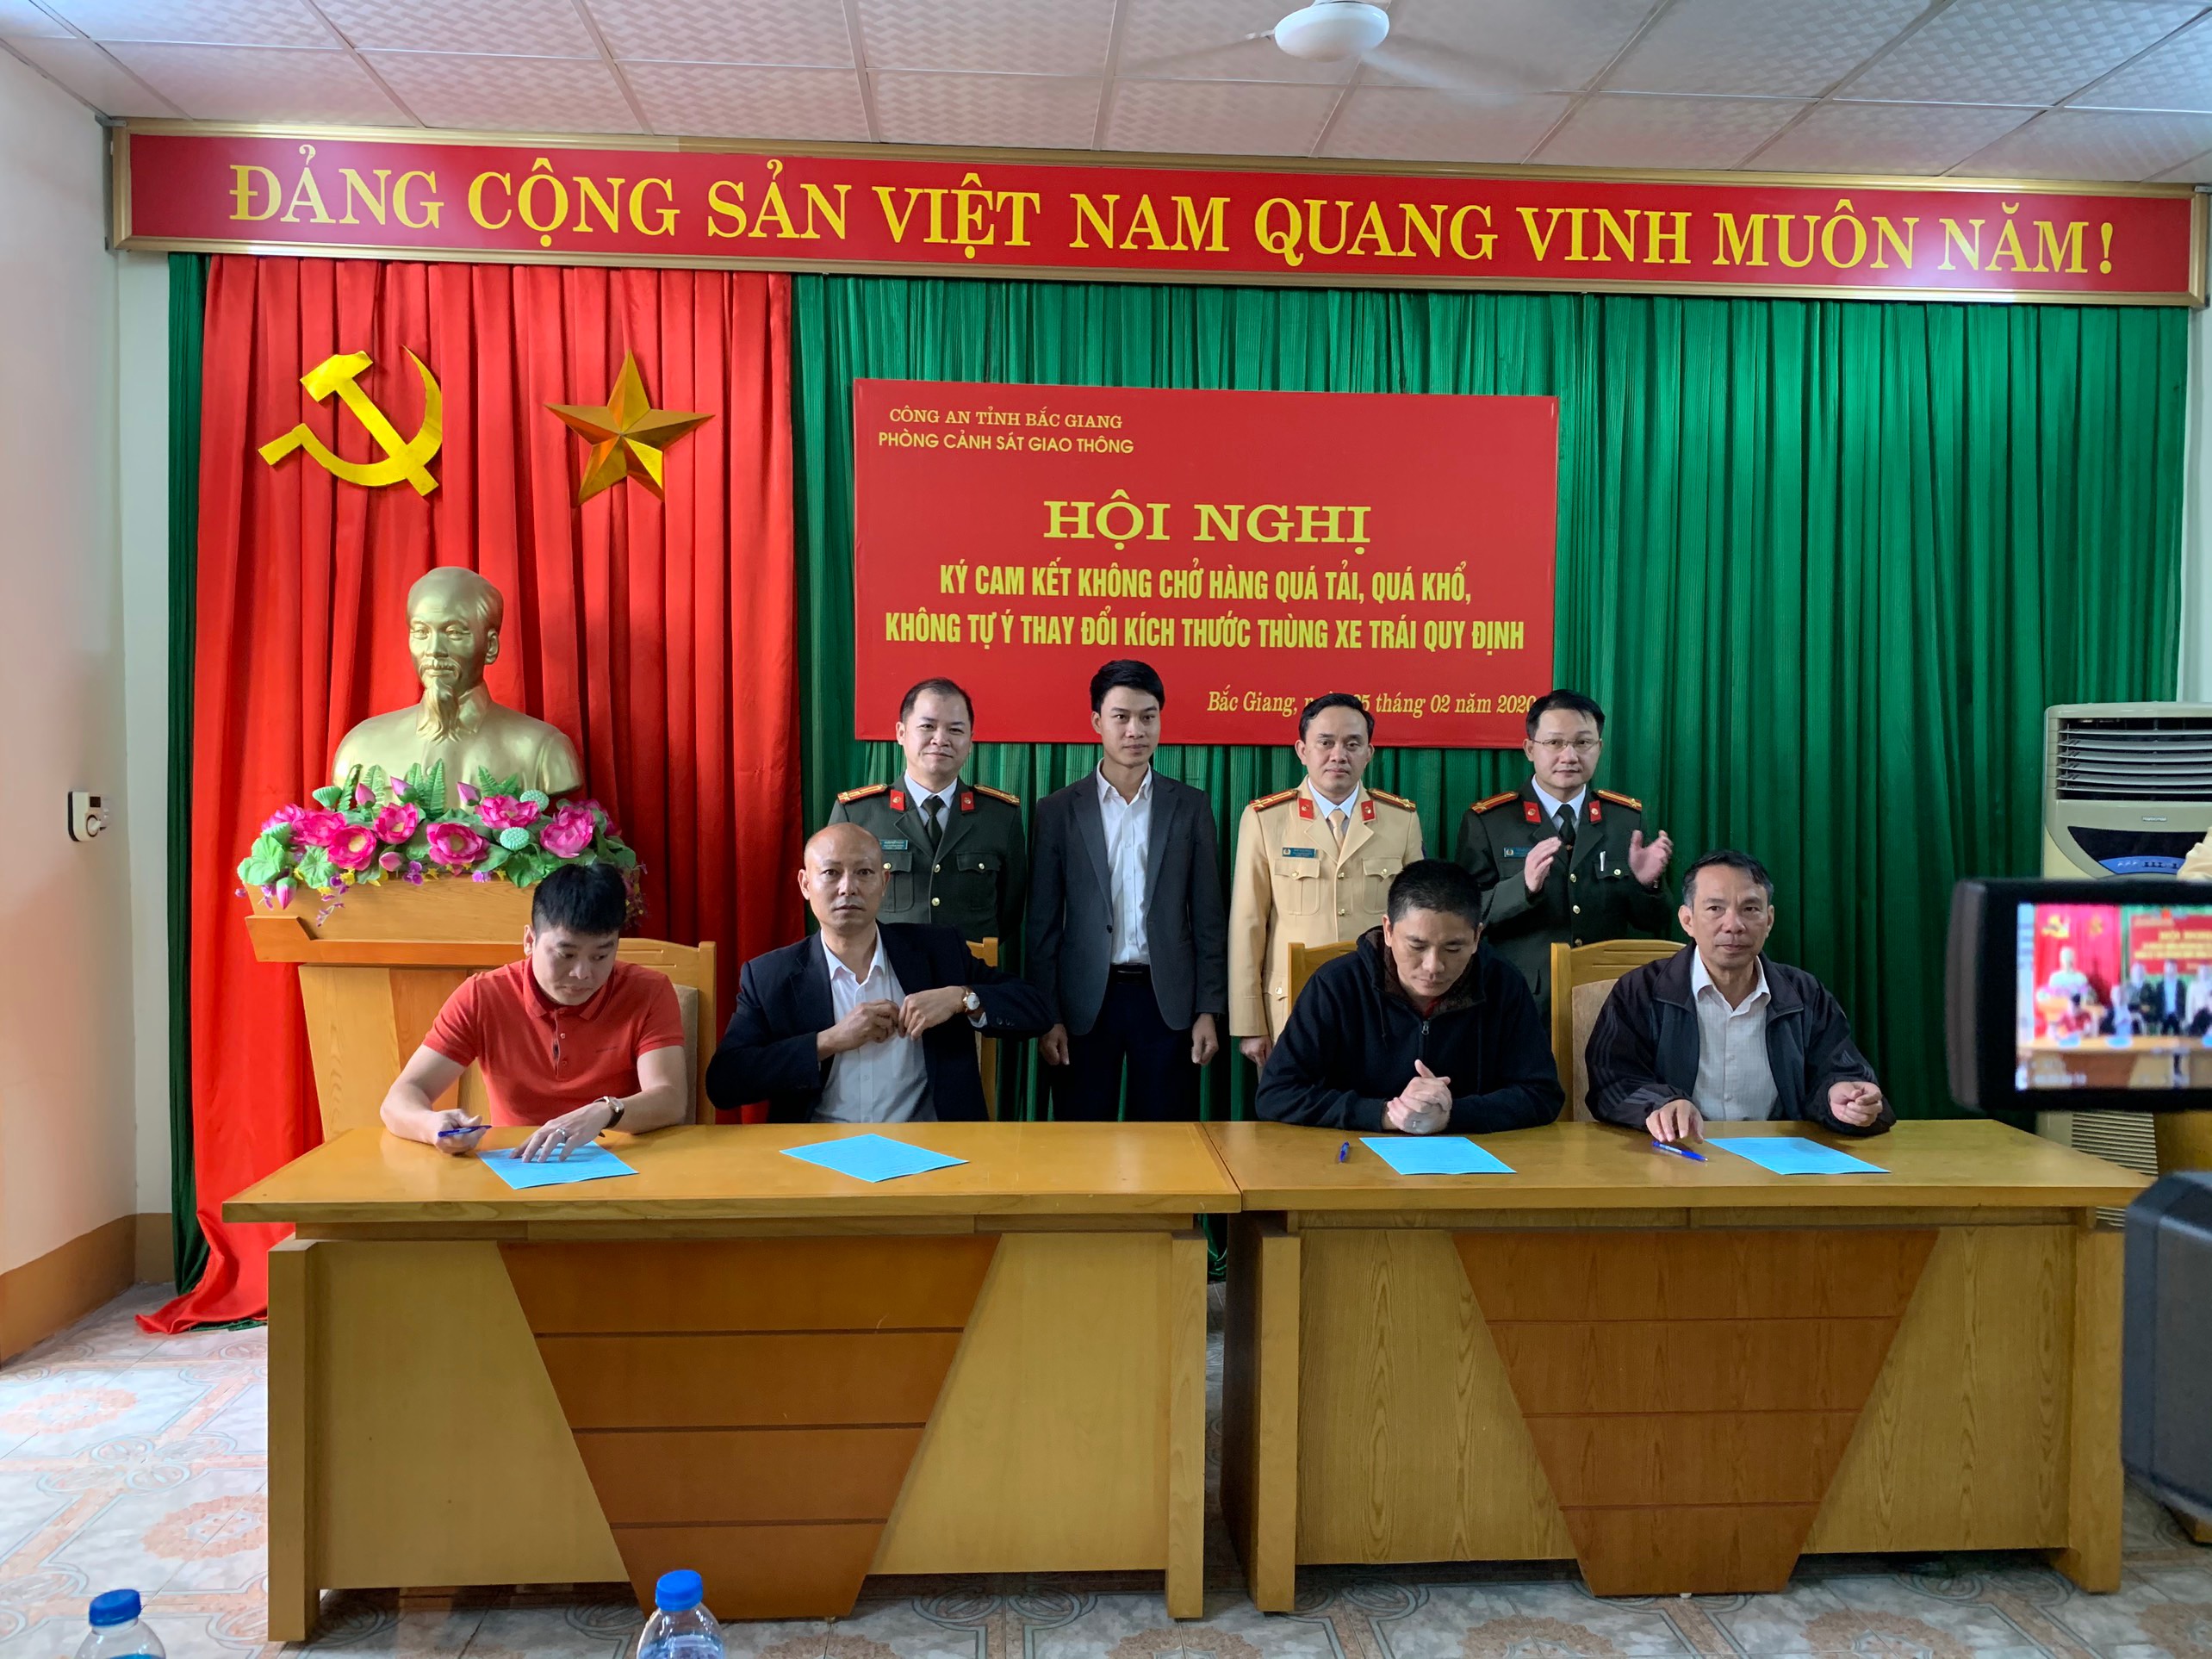 Bắc Giang: Tiếp tục tổ chức ký cam kết không chở hàng quá tải trọng